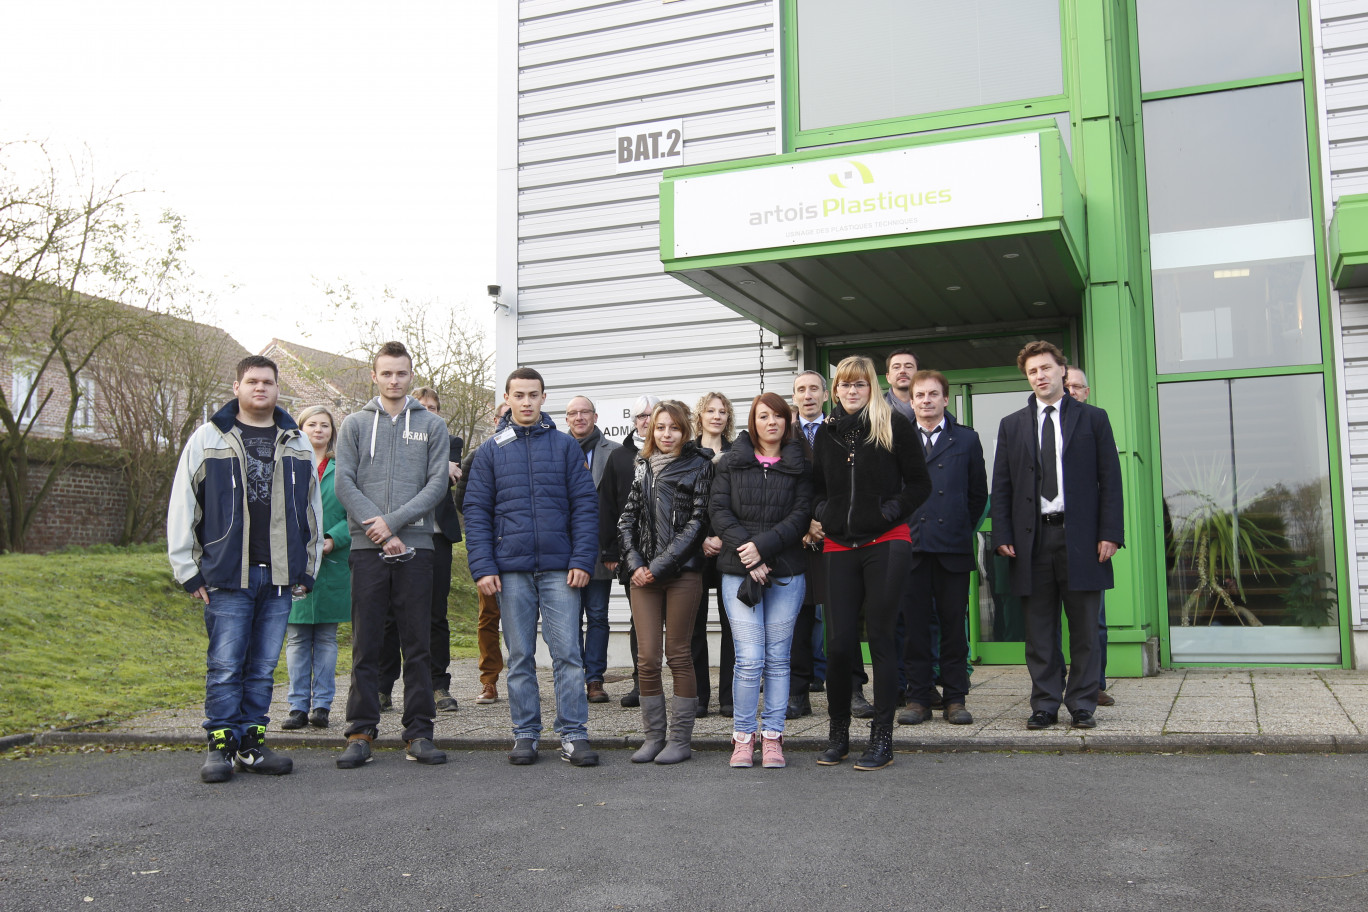 Les représentants du Crepi et le groupe de l’école de la deuxième chance de l’Artois devant les locaux de l’entreprise Artois Plastique à Houdain.